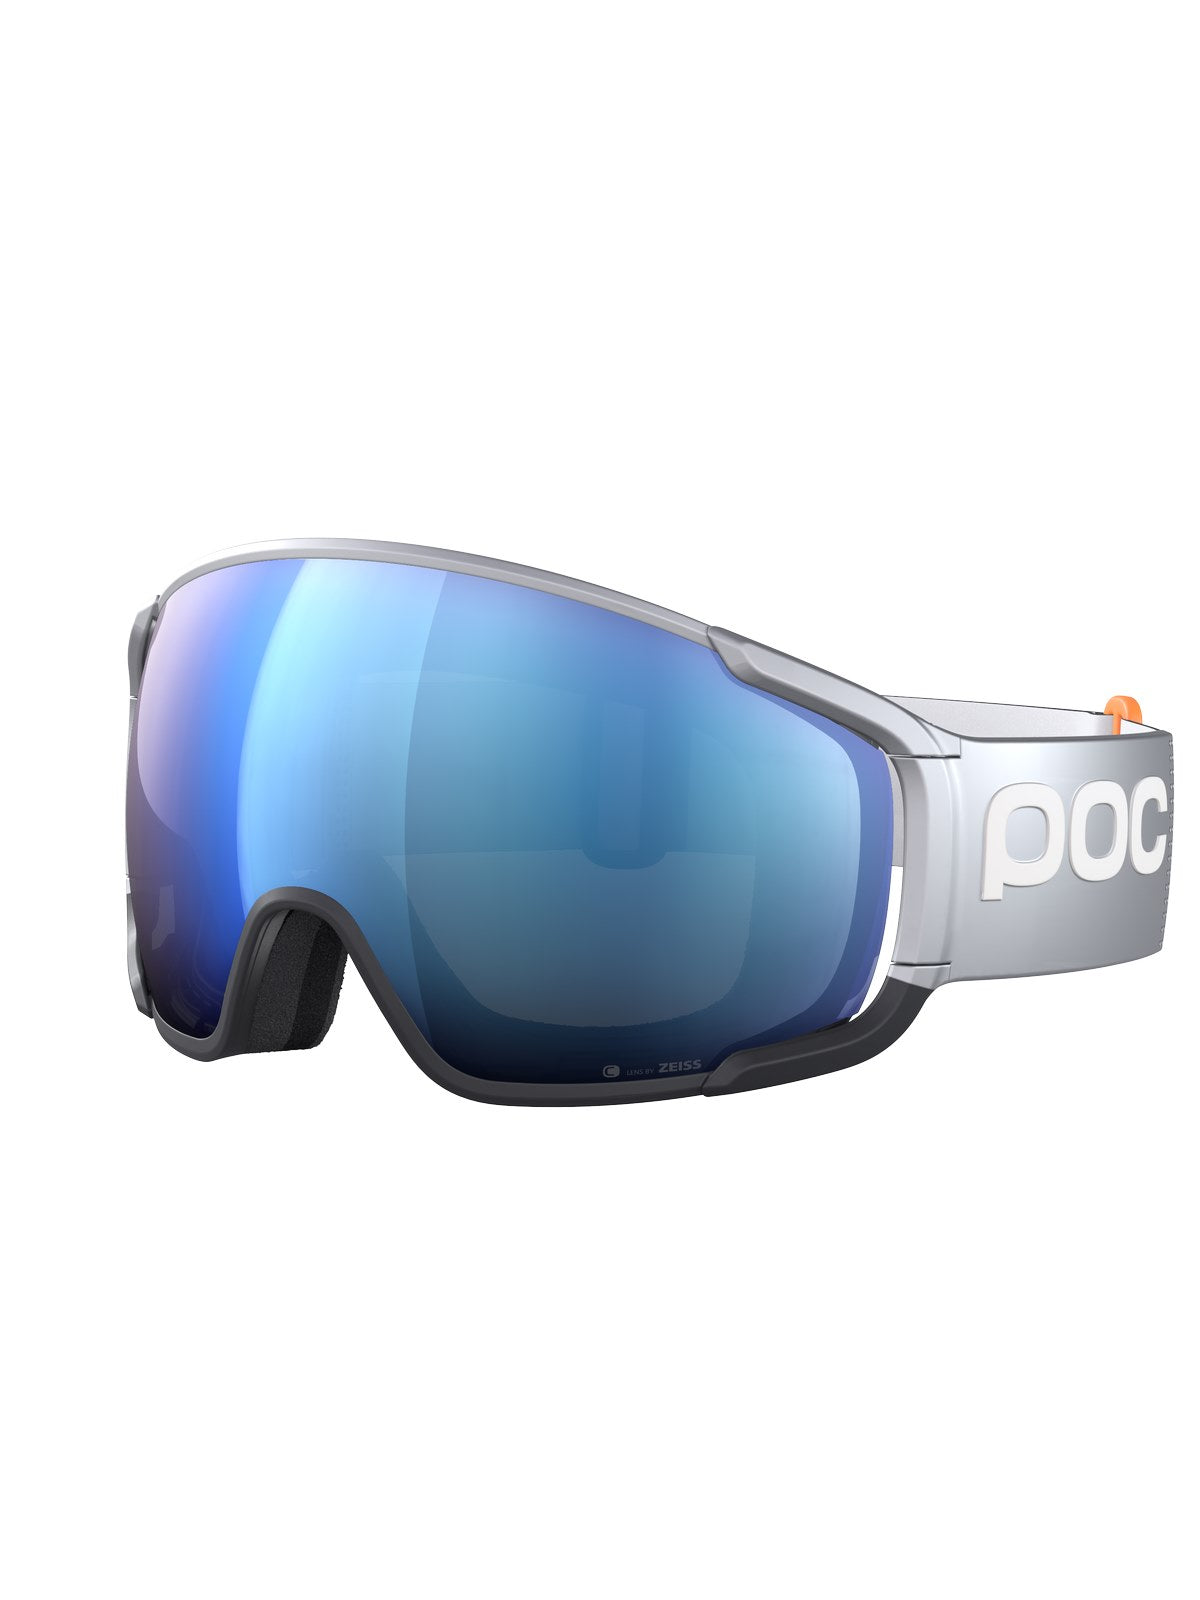 Gogle narciarskie POC Zonula Race - Argentite Silver|Ur. Black|Pt. Sunny Blue Cat 2